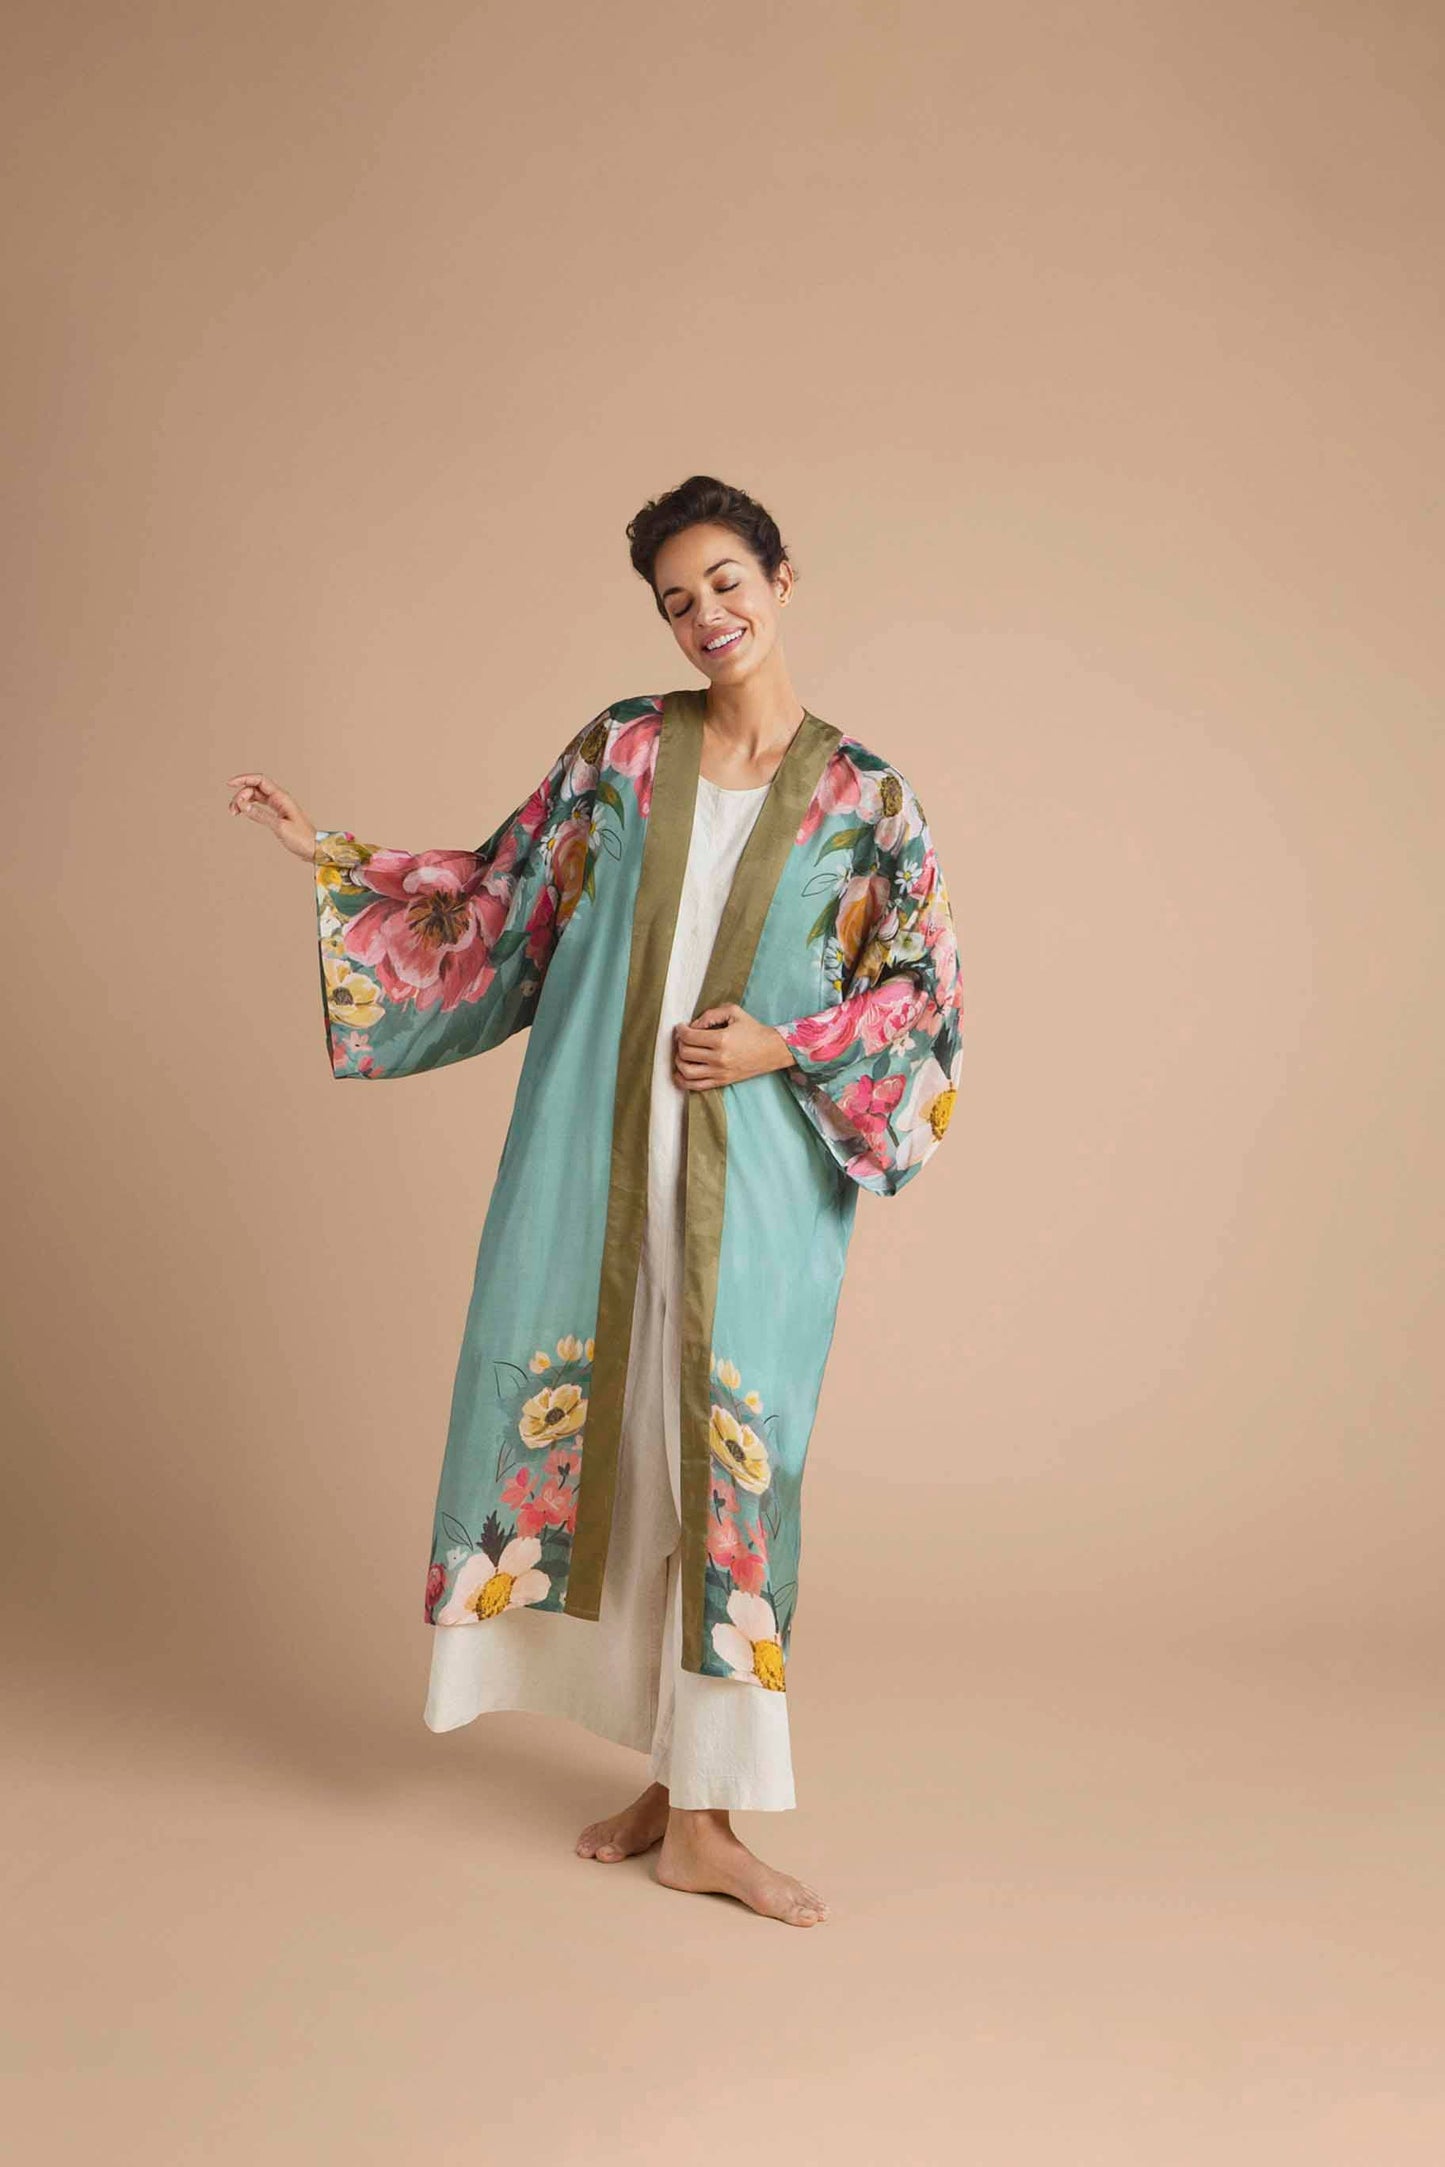 Kimono Gown- Impressionist Floral Kimono Gown - Teal